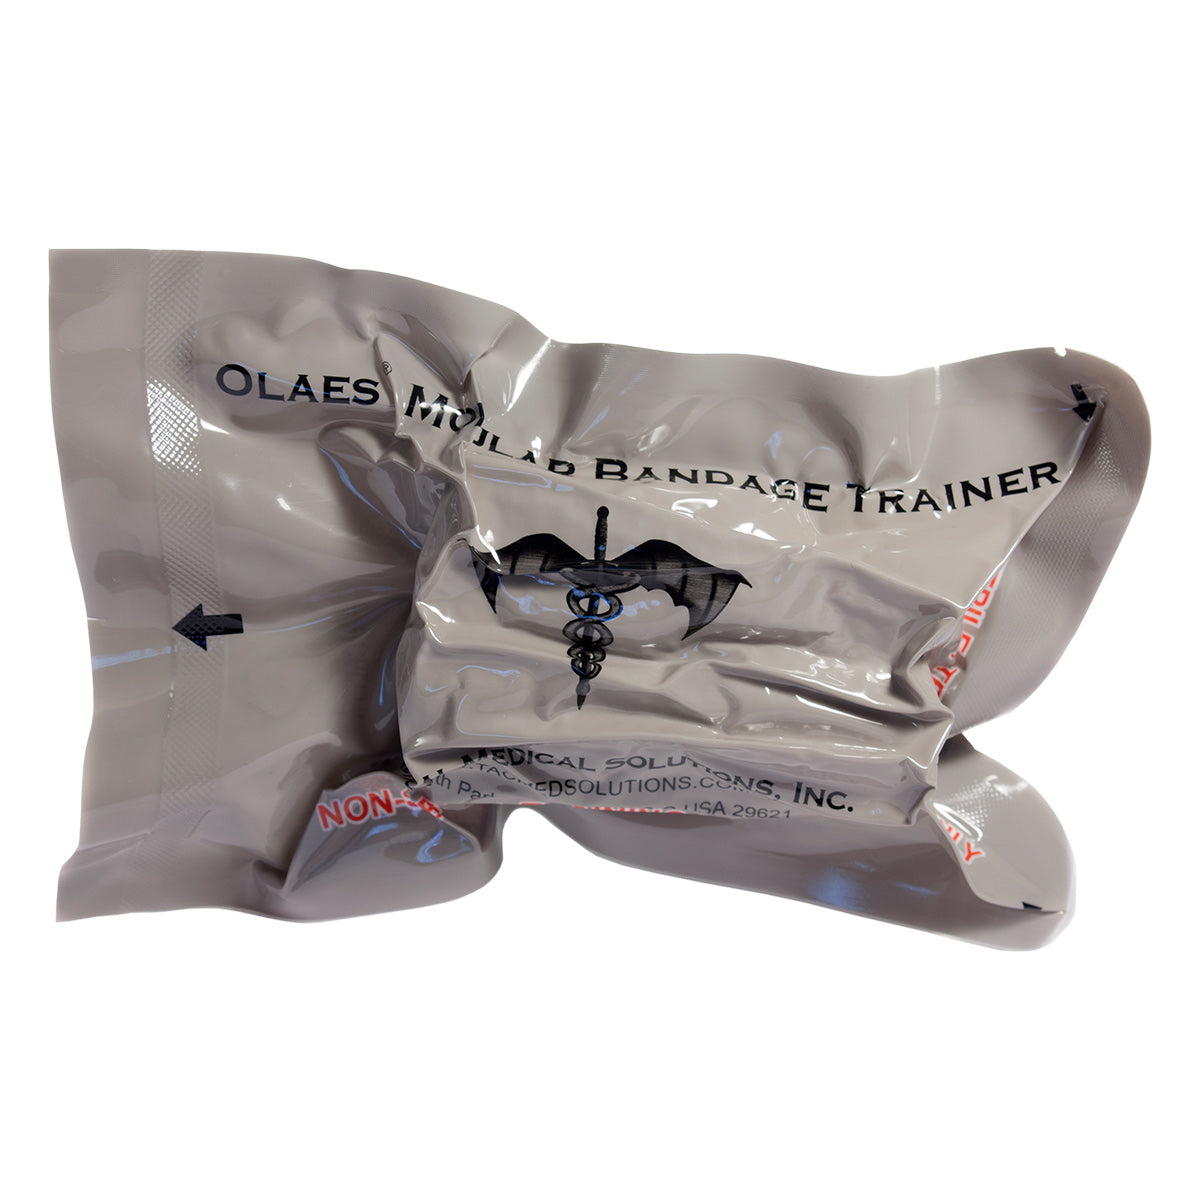 OLAES® Modular Bandage - Trainer